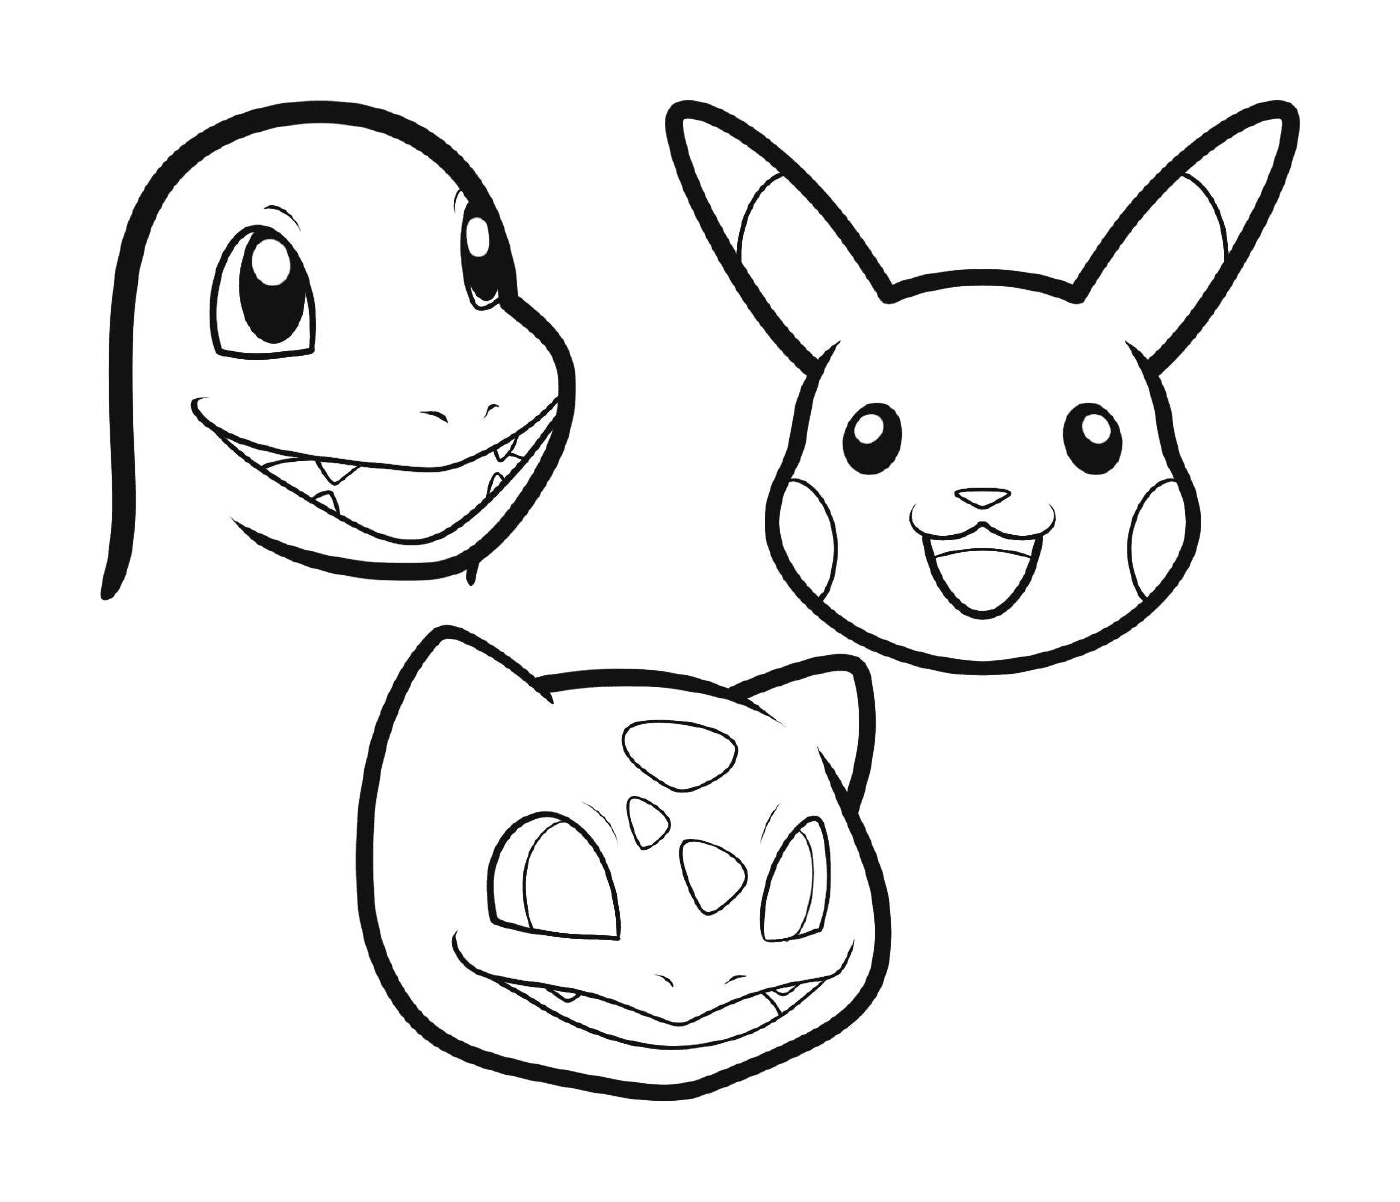  الرسومات بواسطة Pikachu وCarapus وBulbigisar سهل اللّون 